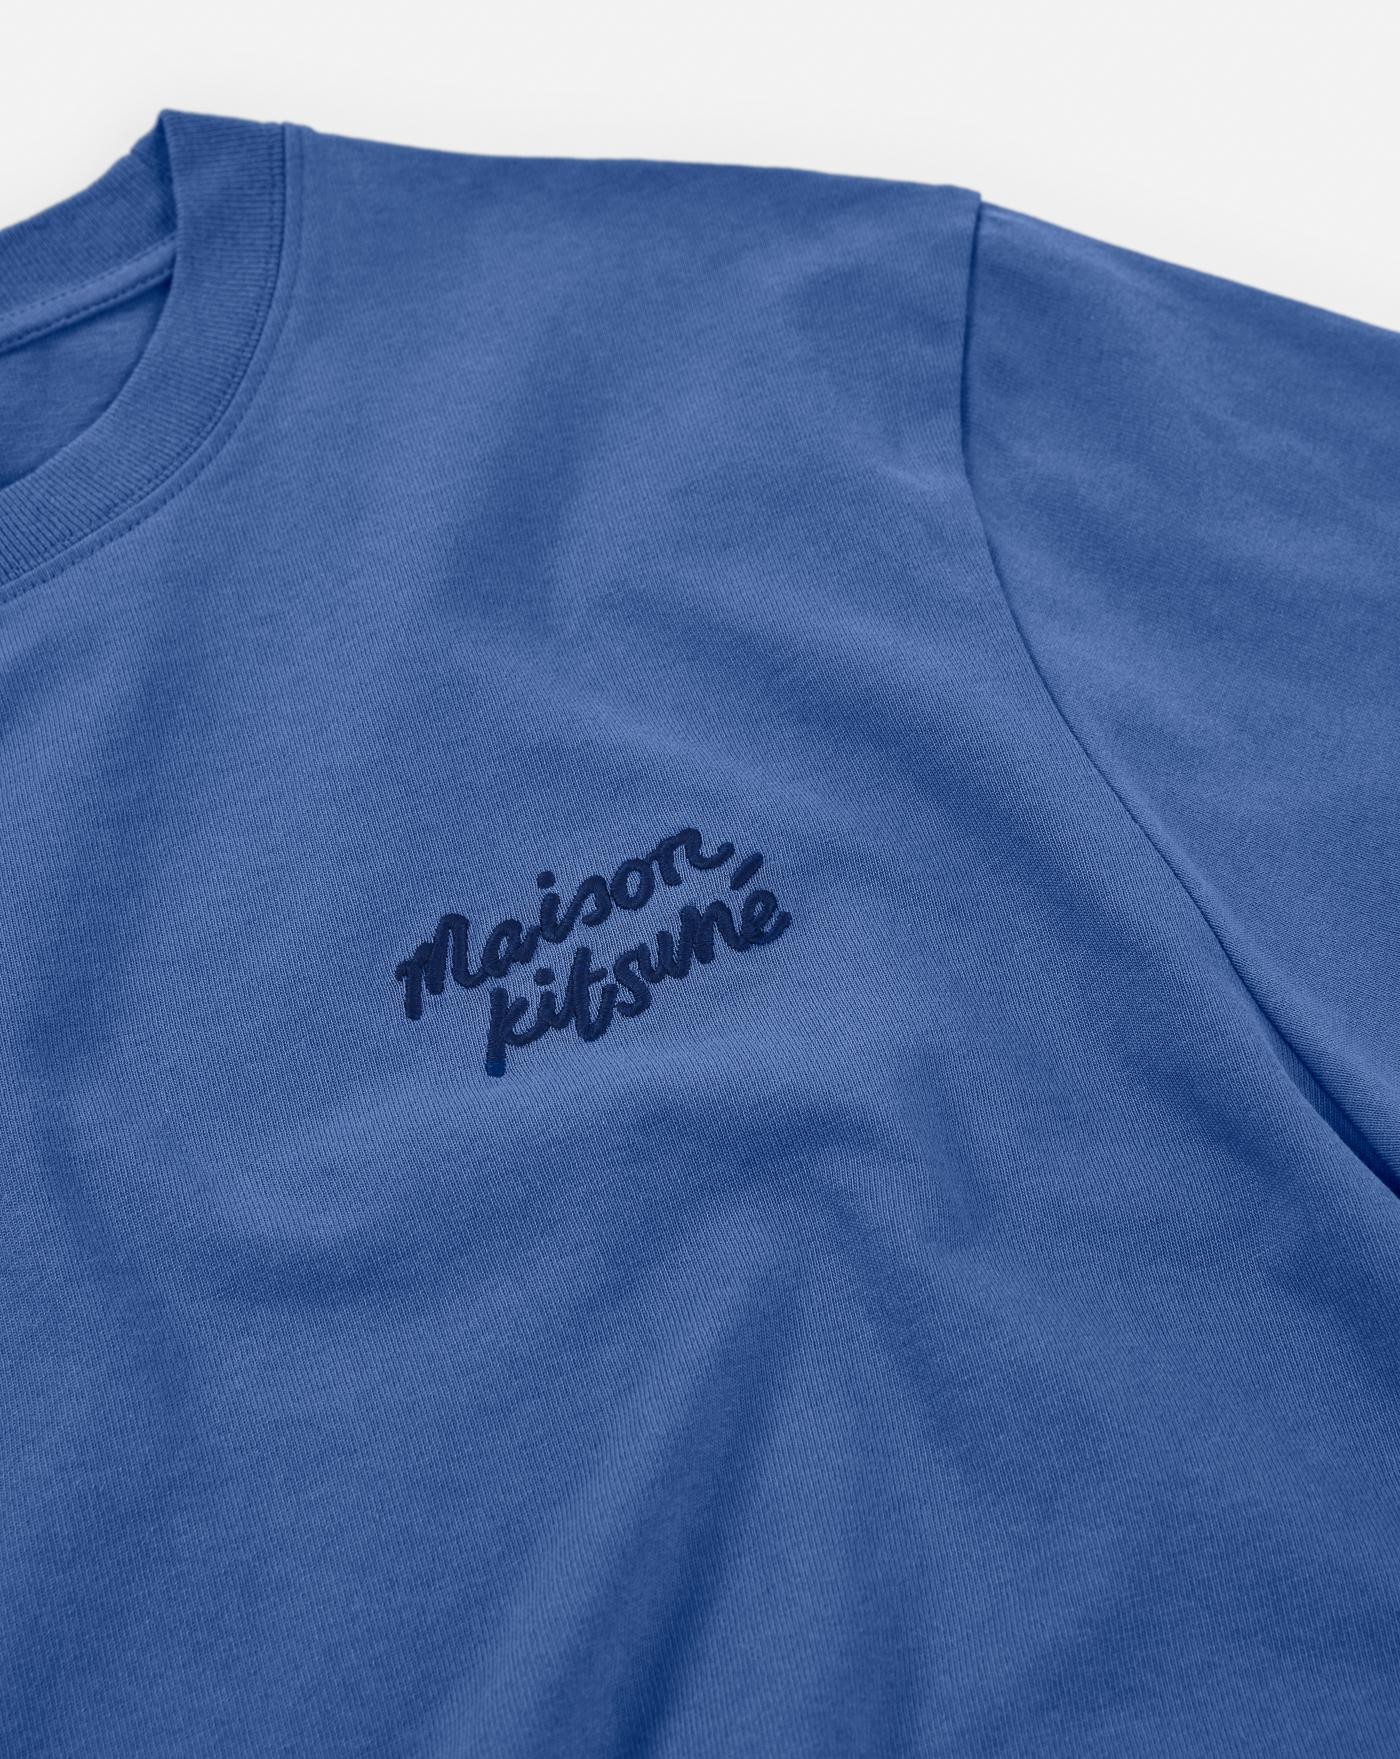 Camiseta Maison Kitsune Handwriting 2